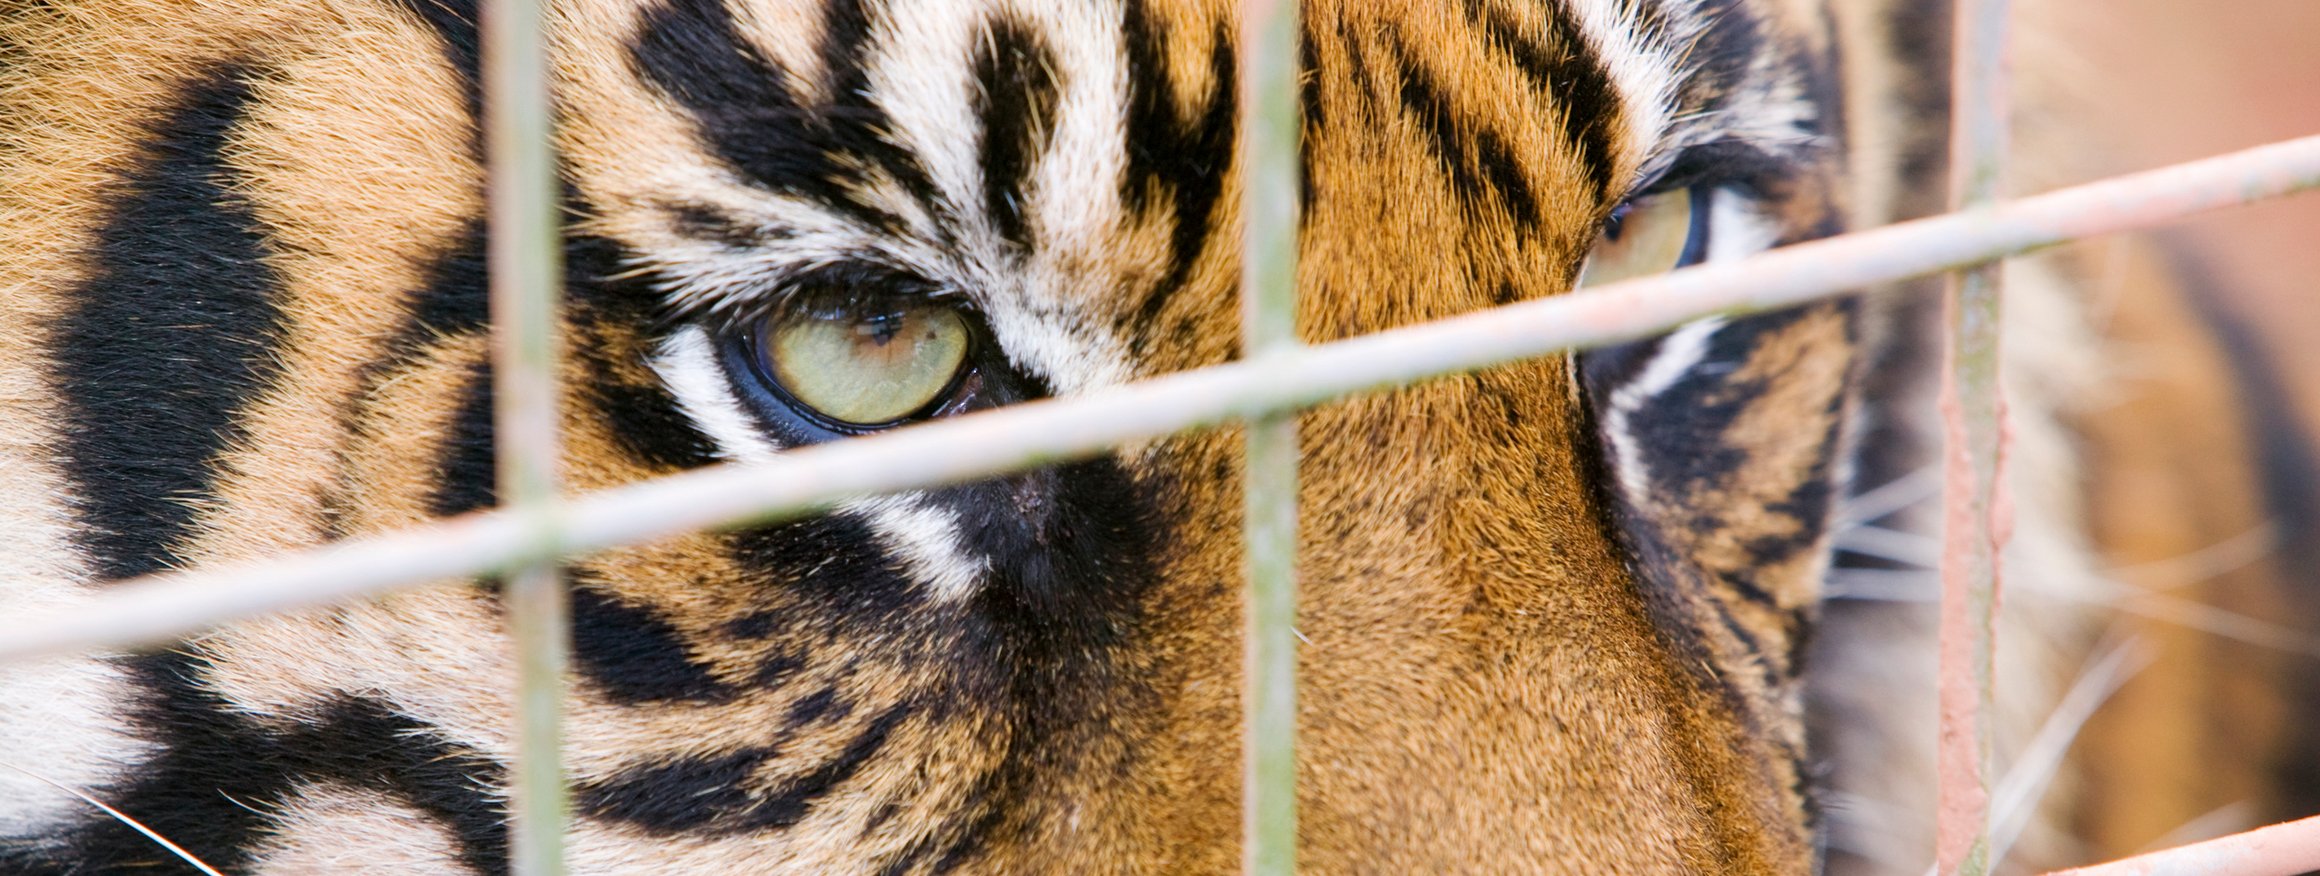 Tiger blickt durch Käfiggitter nach außen